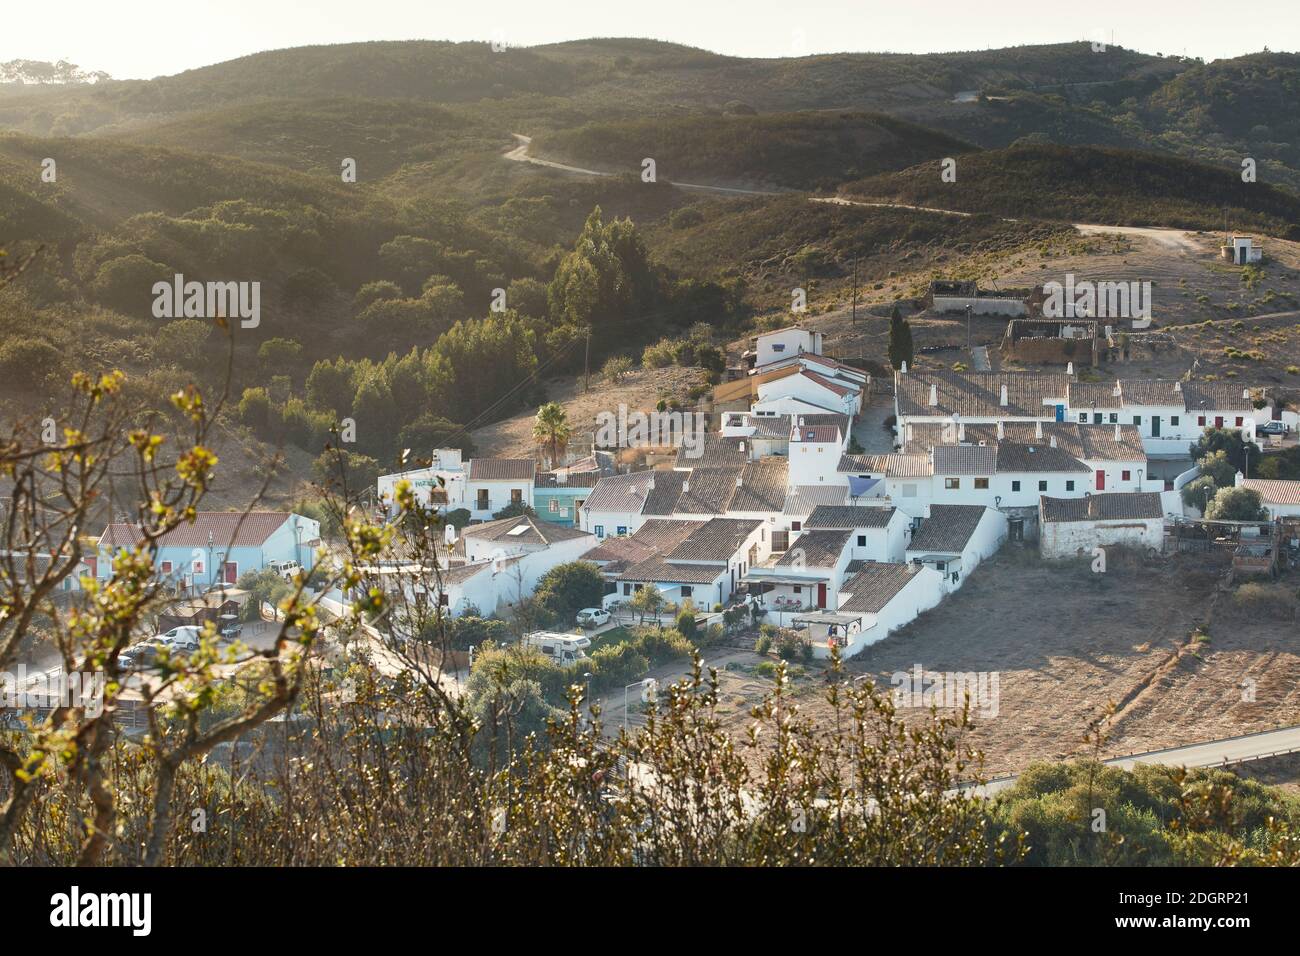 Blick über das restaurierte traditionelle Dorf Aldeia da Pedralva, Naturpark Costa Vincente, Algarve, Portugal, Europa Stockfoto